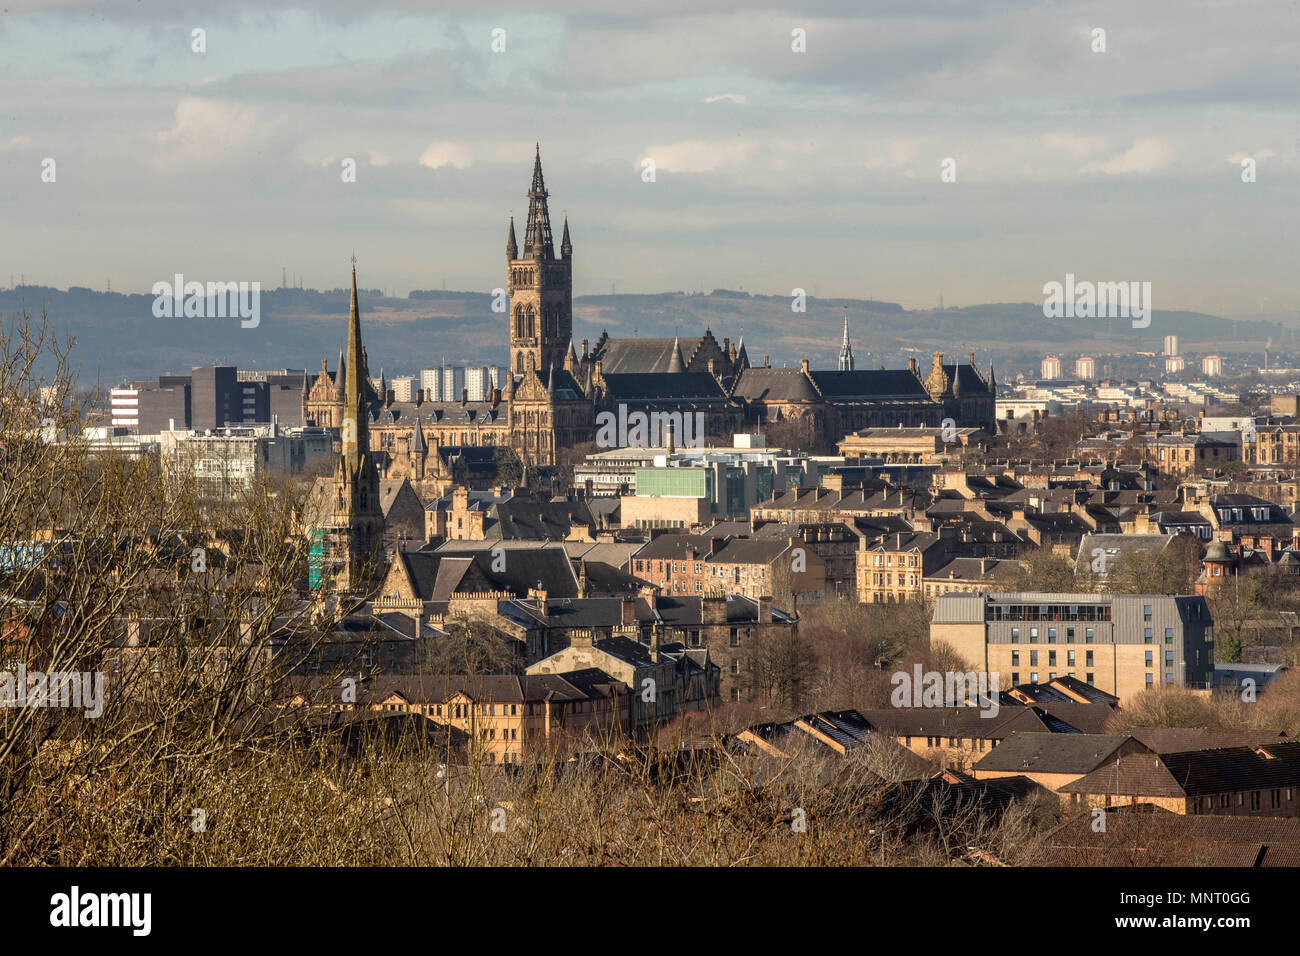 View of Glasgow, Scotland Stock Photo